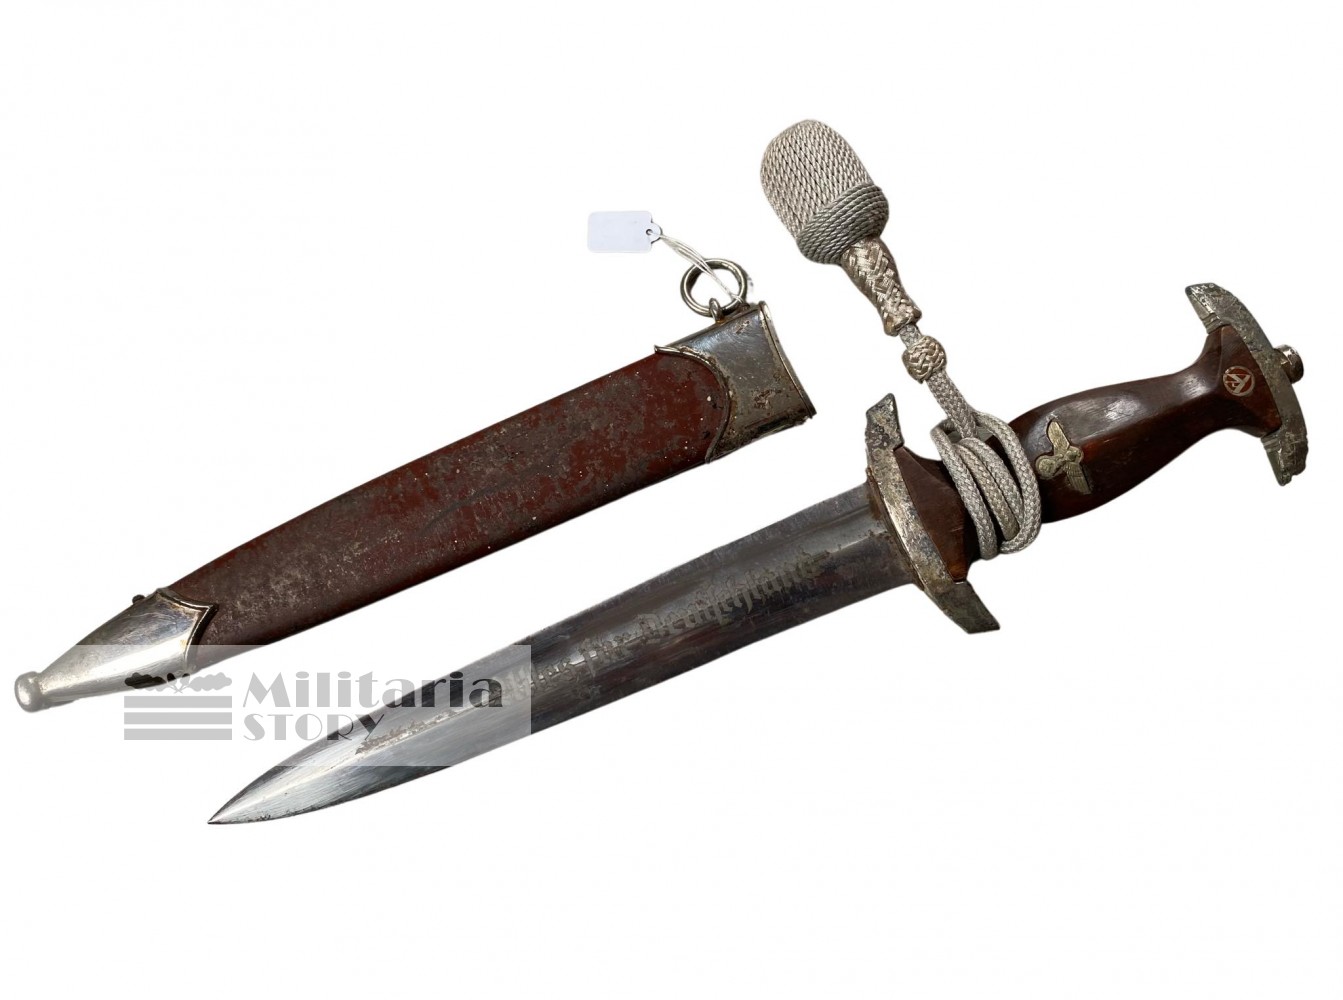 SA RZM Dagger - SA RZM Dagger: Third Reich Edged weapon